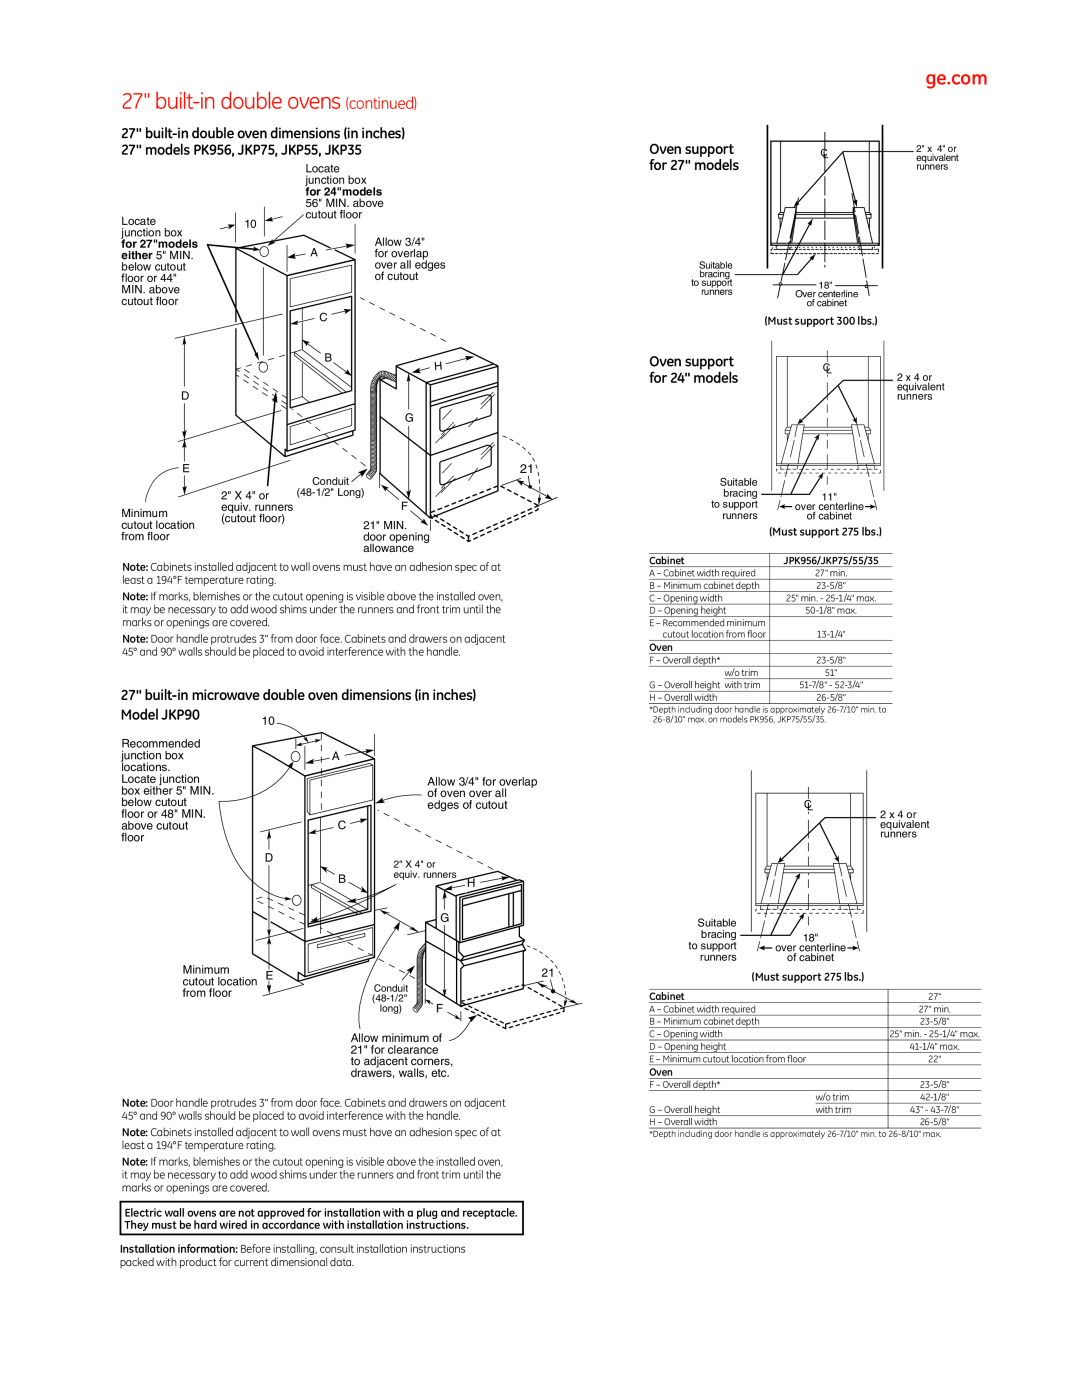 GE PT960, PT920 manual built-indouble ovens continued, for 27 models, Model JKP90, Oven support for 24 models 